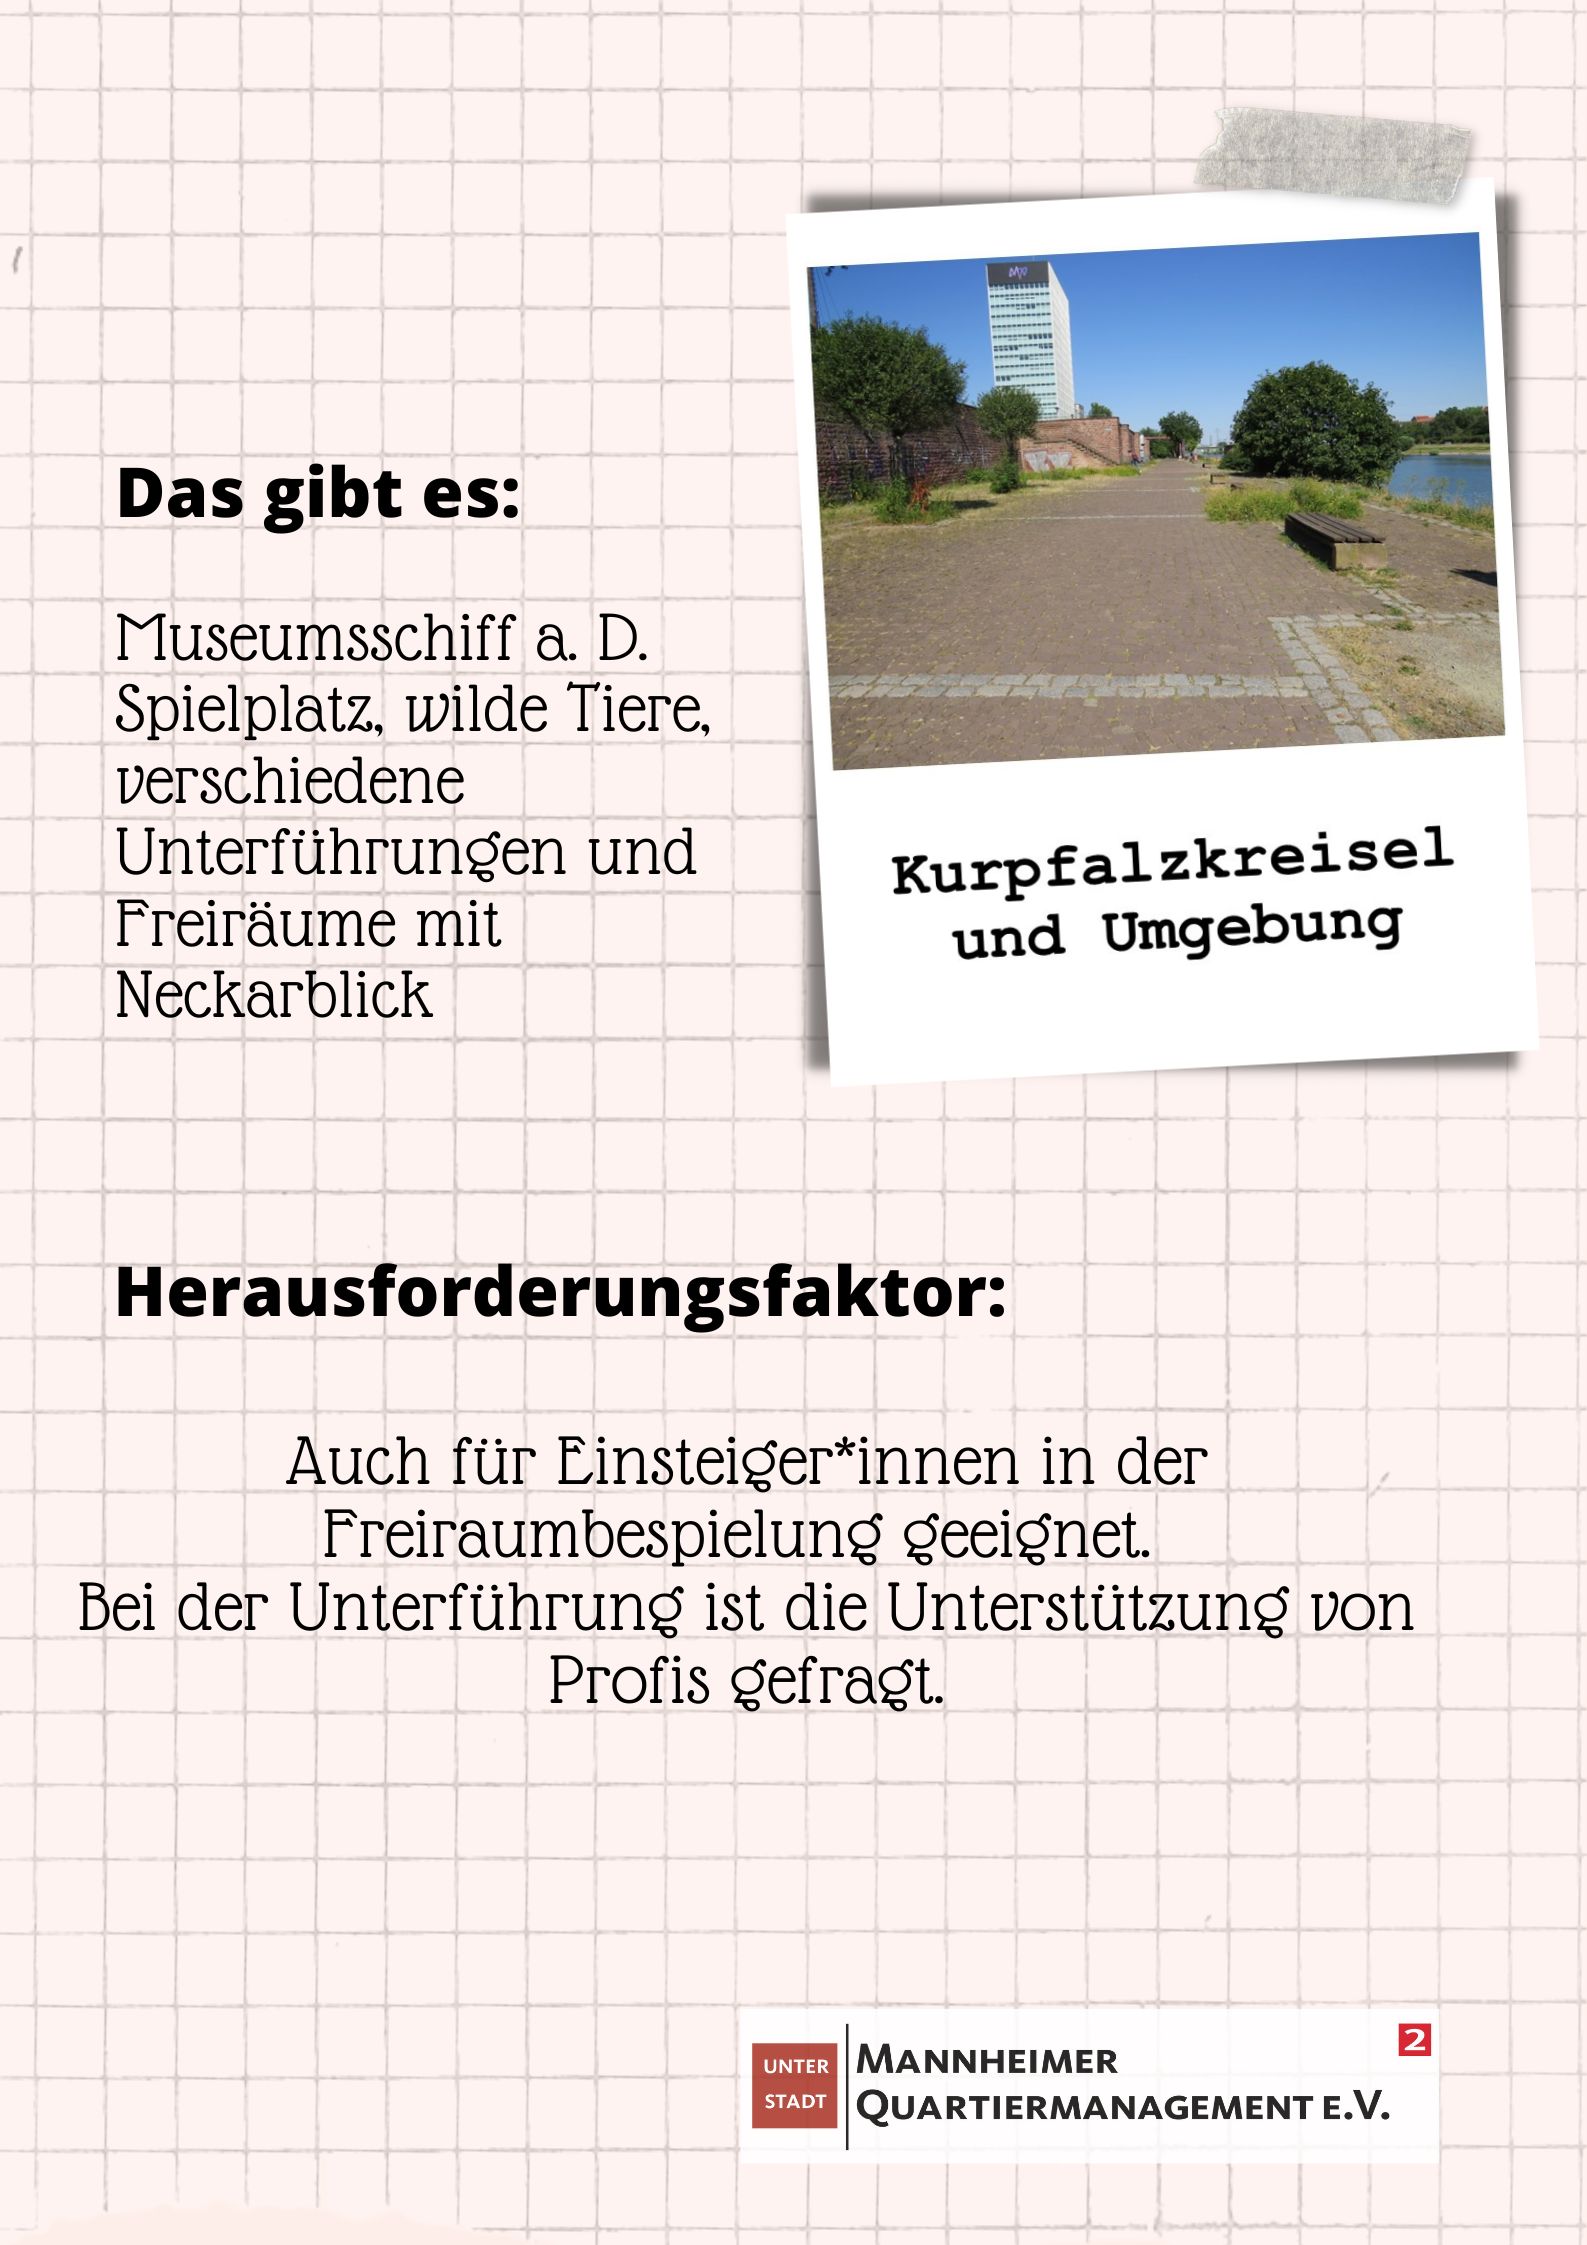 Aktionsfonds Steckbrief Kurpfalzkreisel